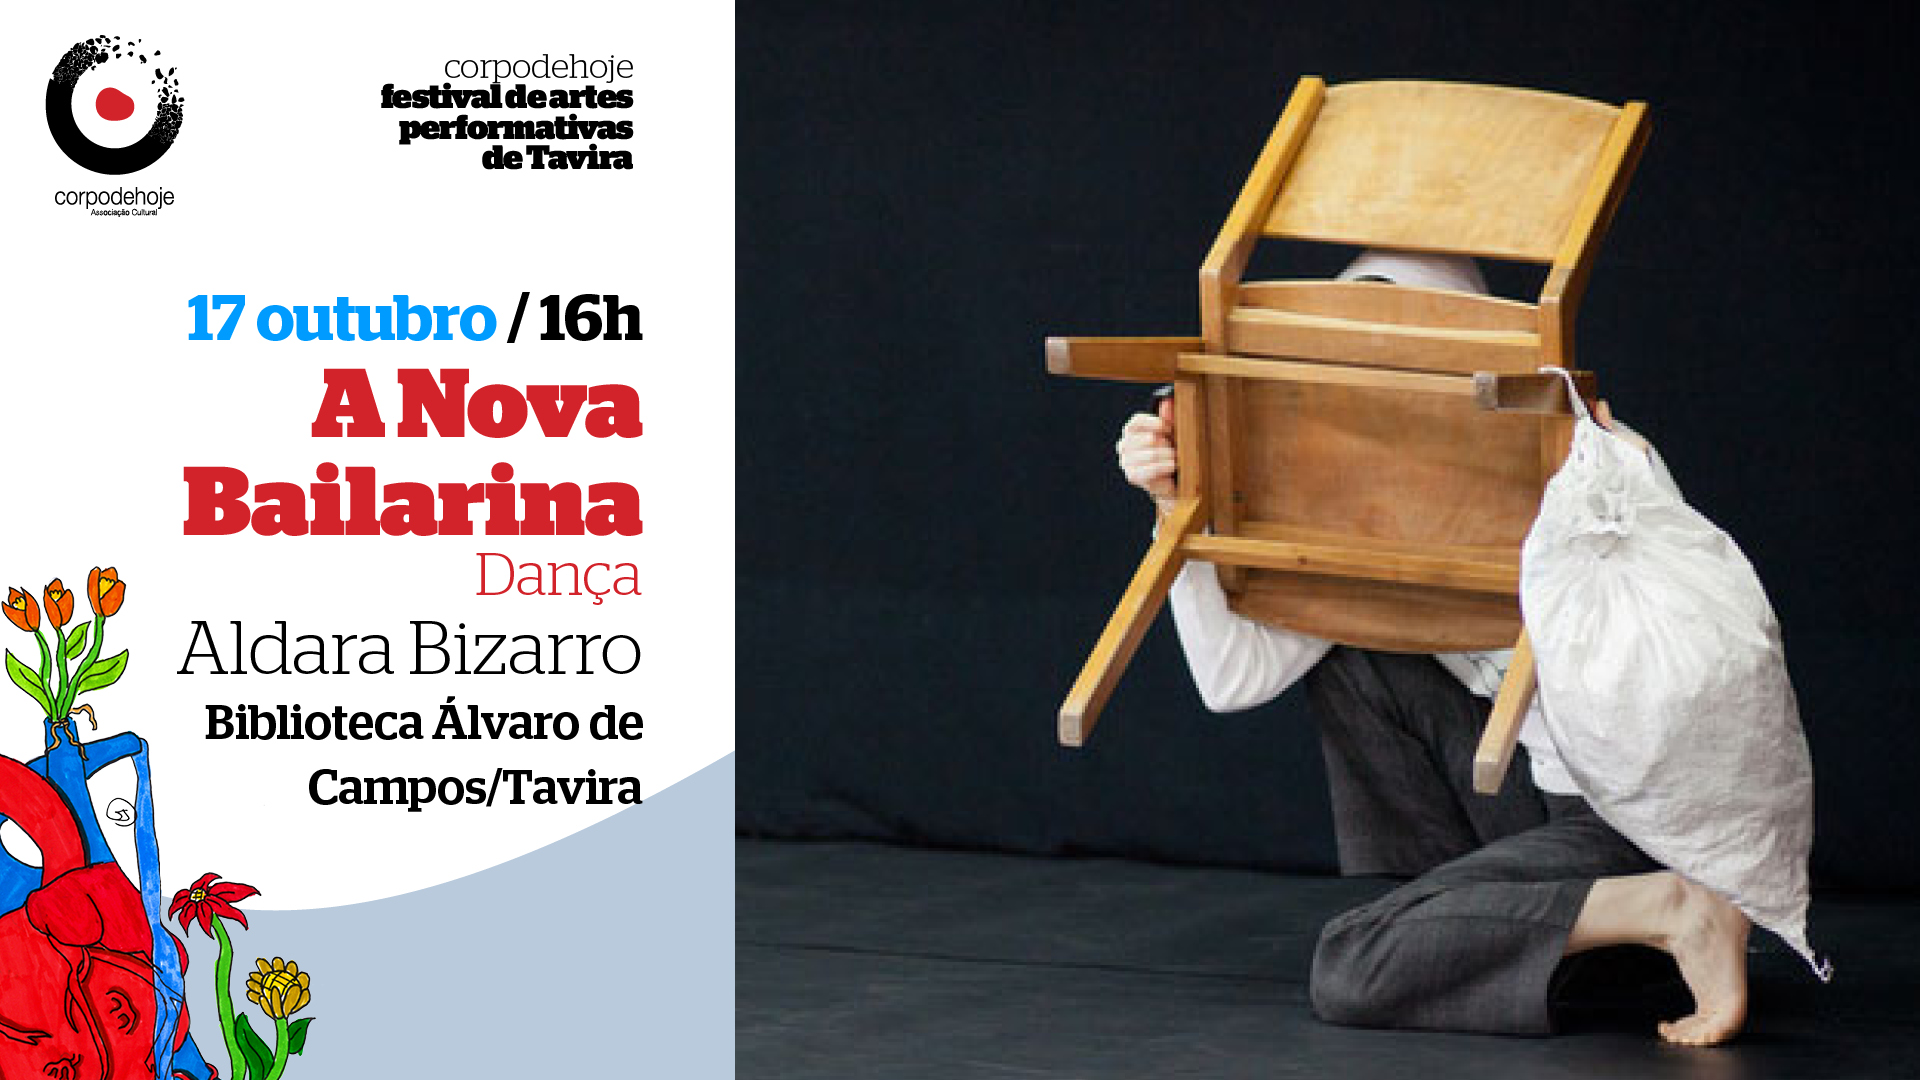 A Nova Bailarina de Aldara Bizarro  | CORPO DE HOJE festival de artes performativas de Tavira 2021